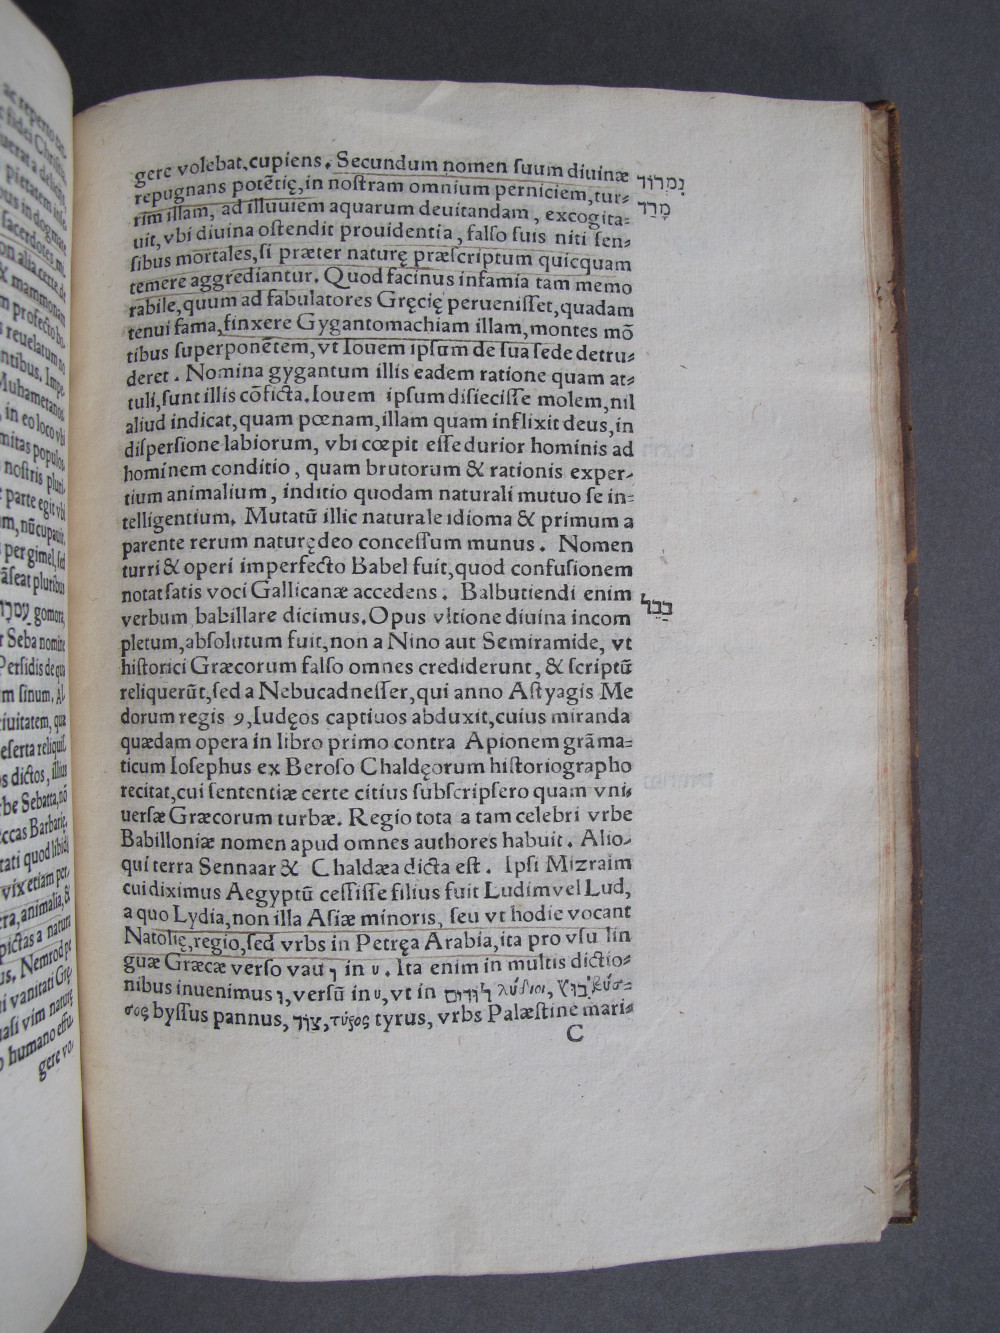 Folio C1 recto